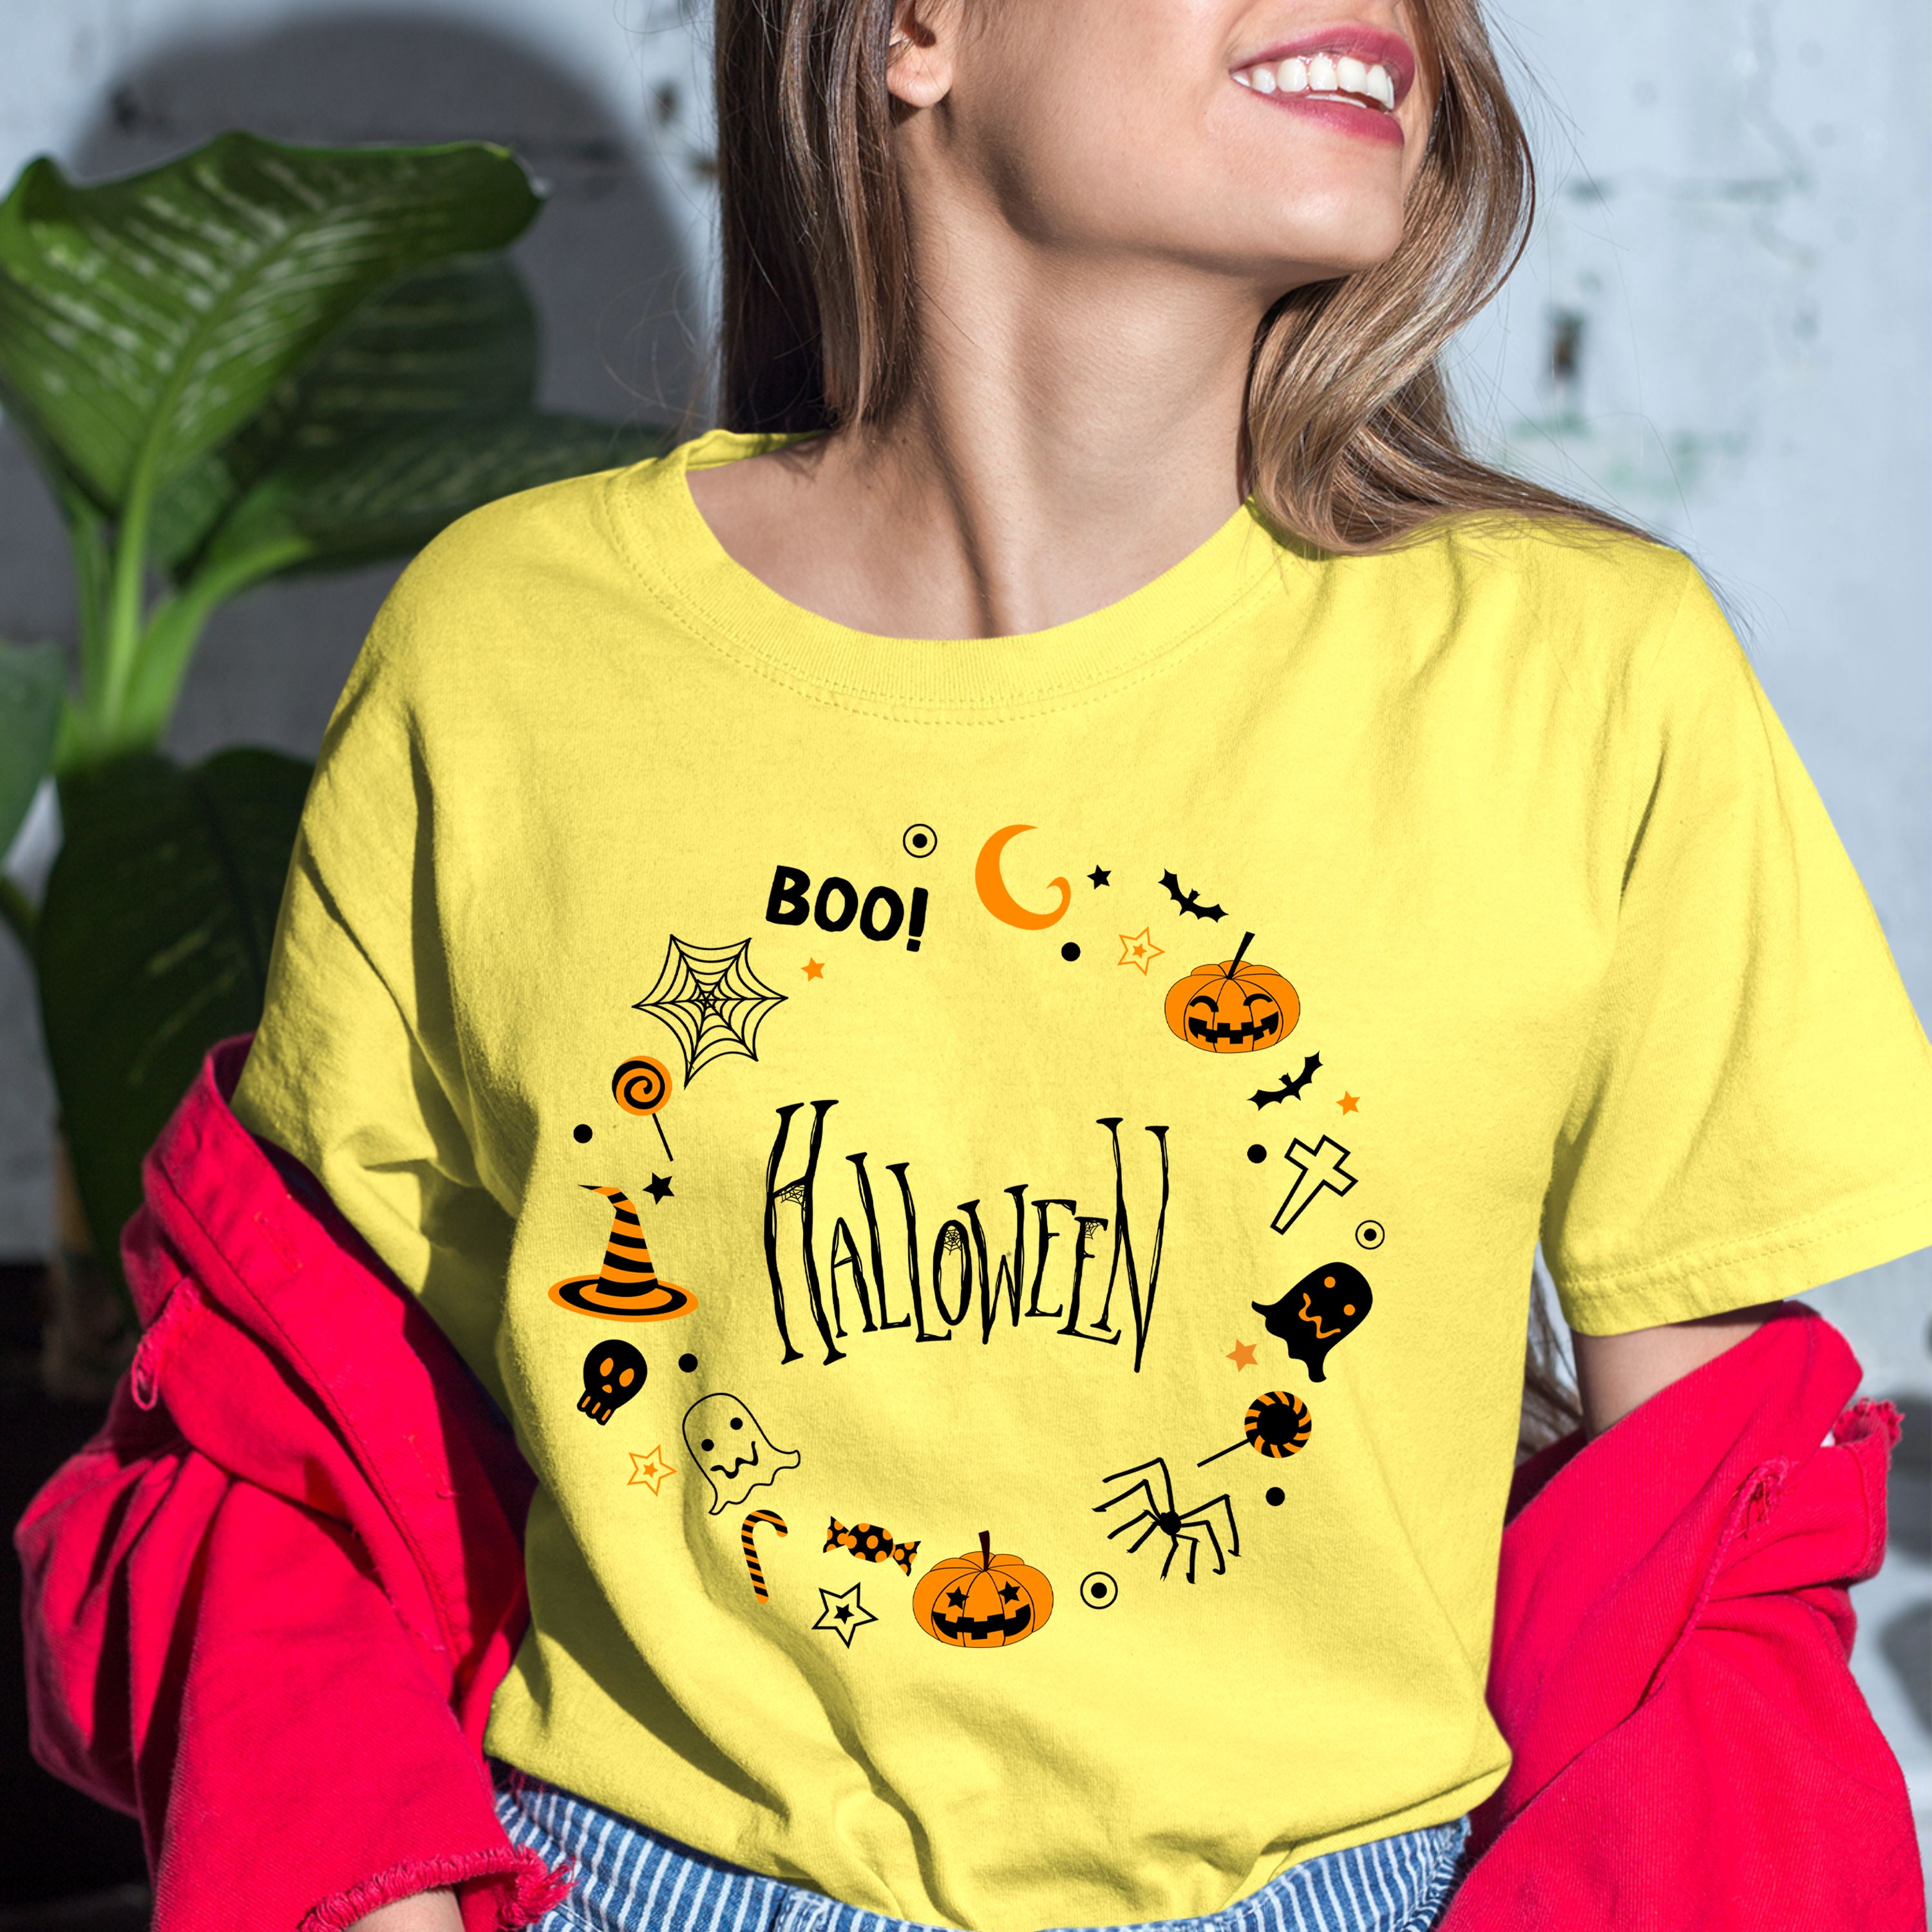 Halloween Shirt - Bella Canvas